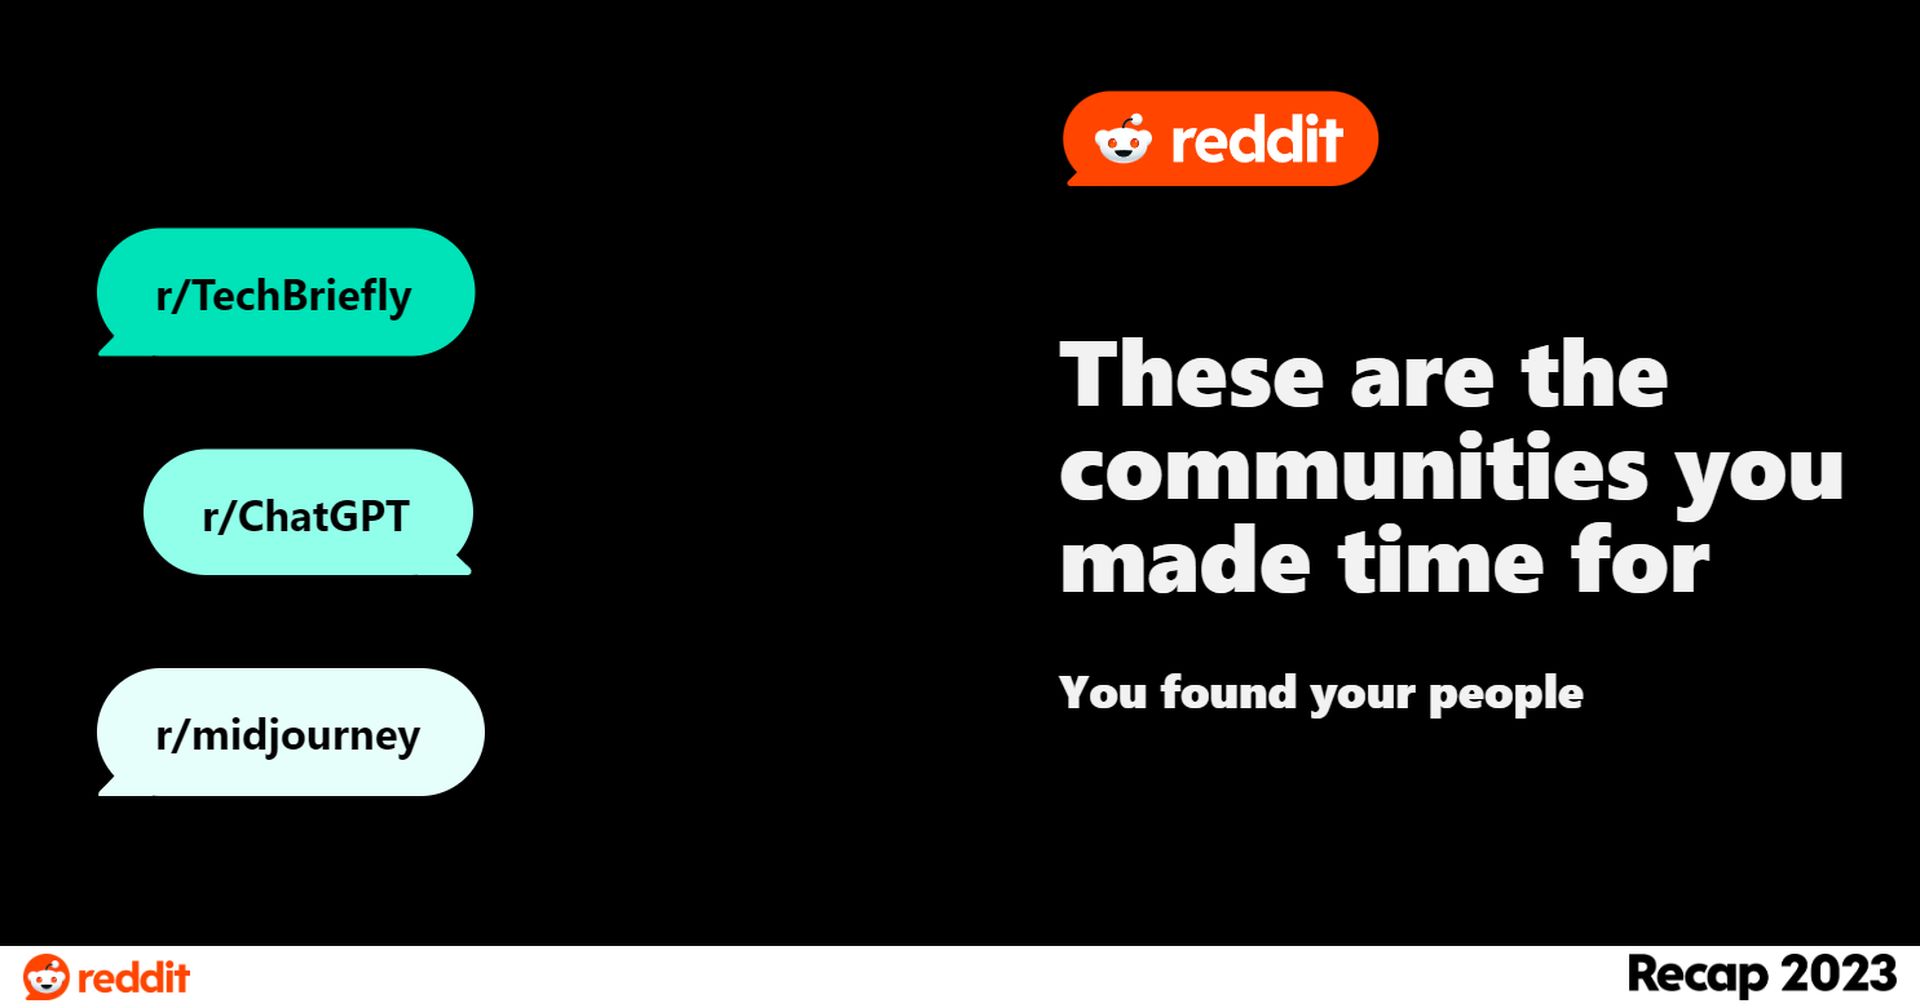 كيفية الحصول على Reddit Recap 2023 في 4 خطوات سهلة! اكتشف رؤى فريدة وأبرز أحداث المجتمع ولحظات لا تُنسى. اكتشف الآن!